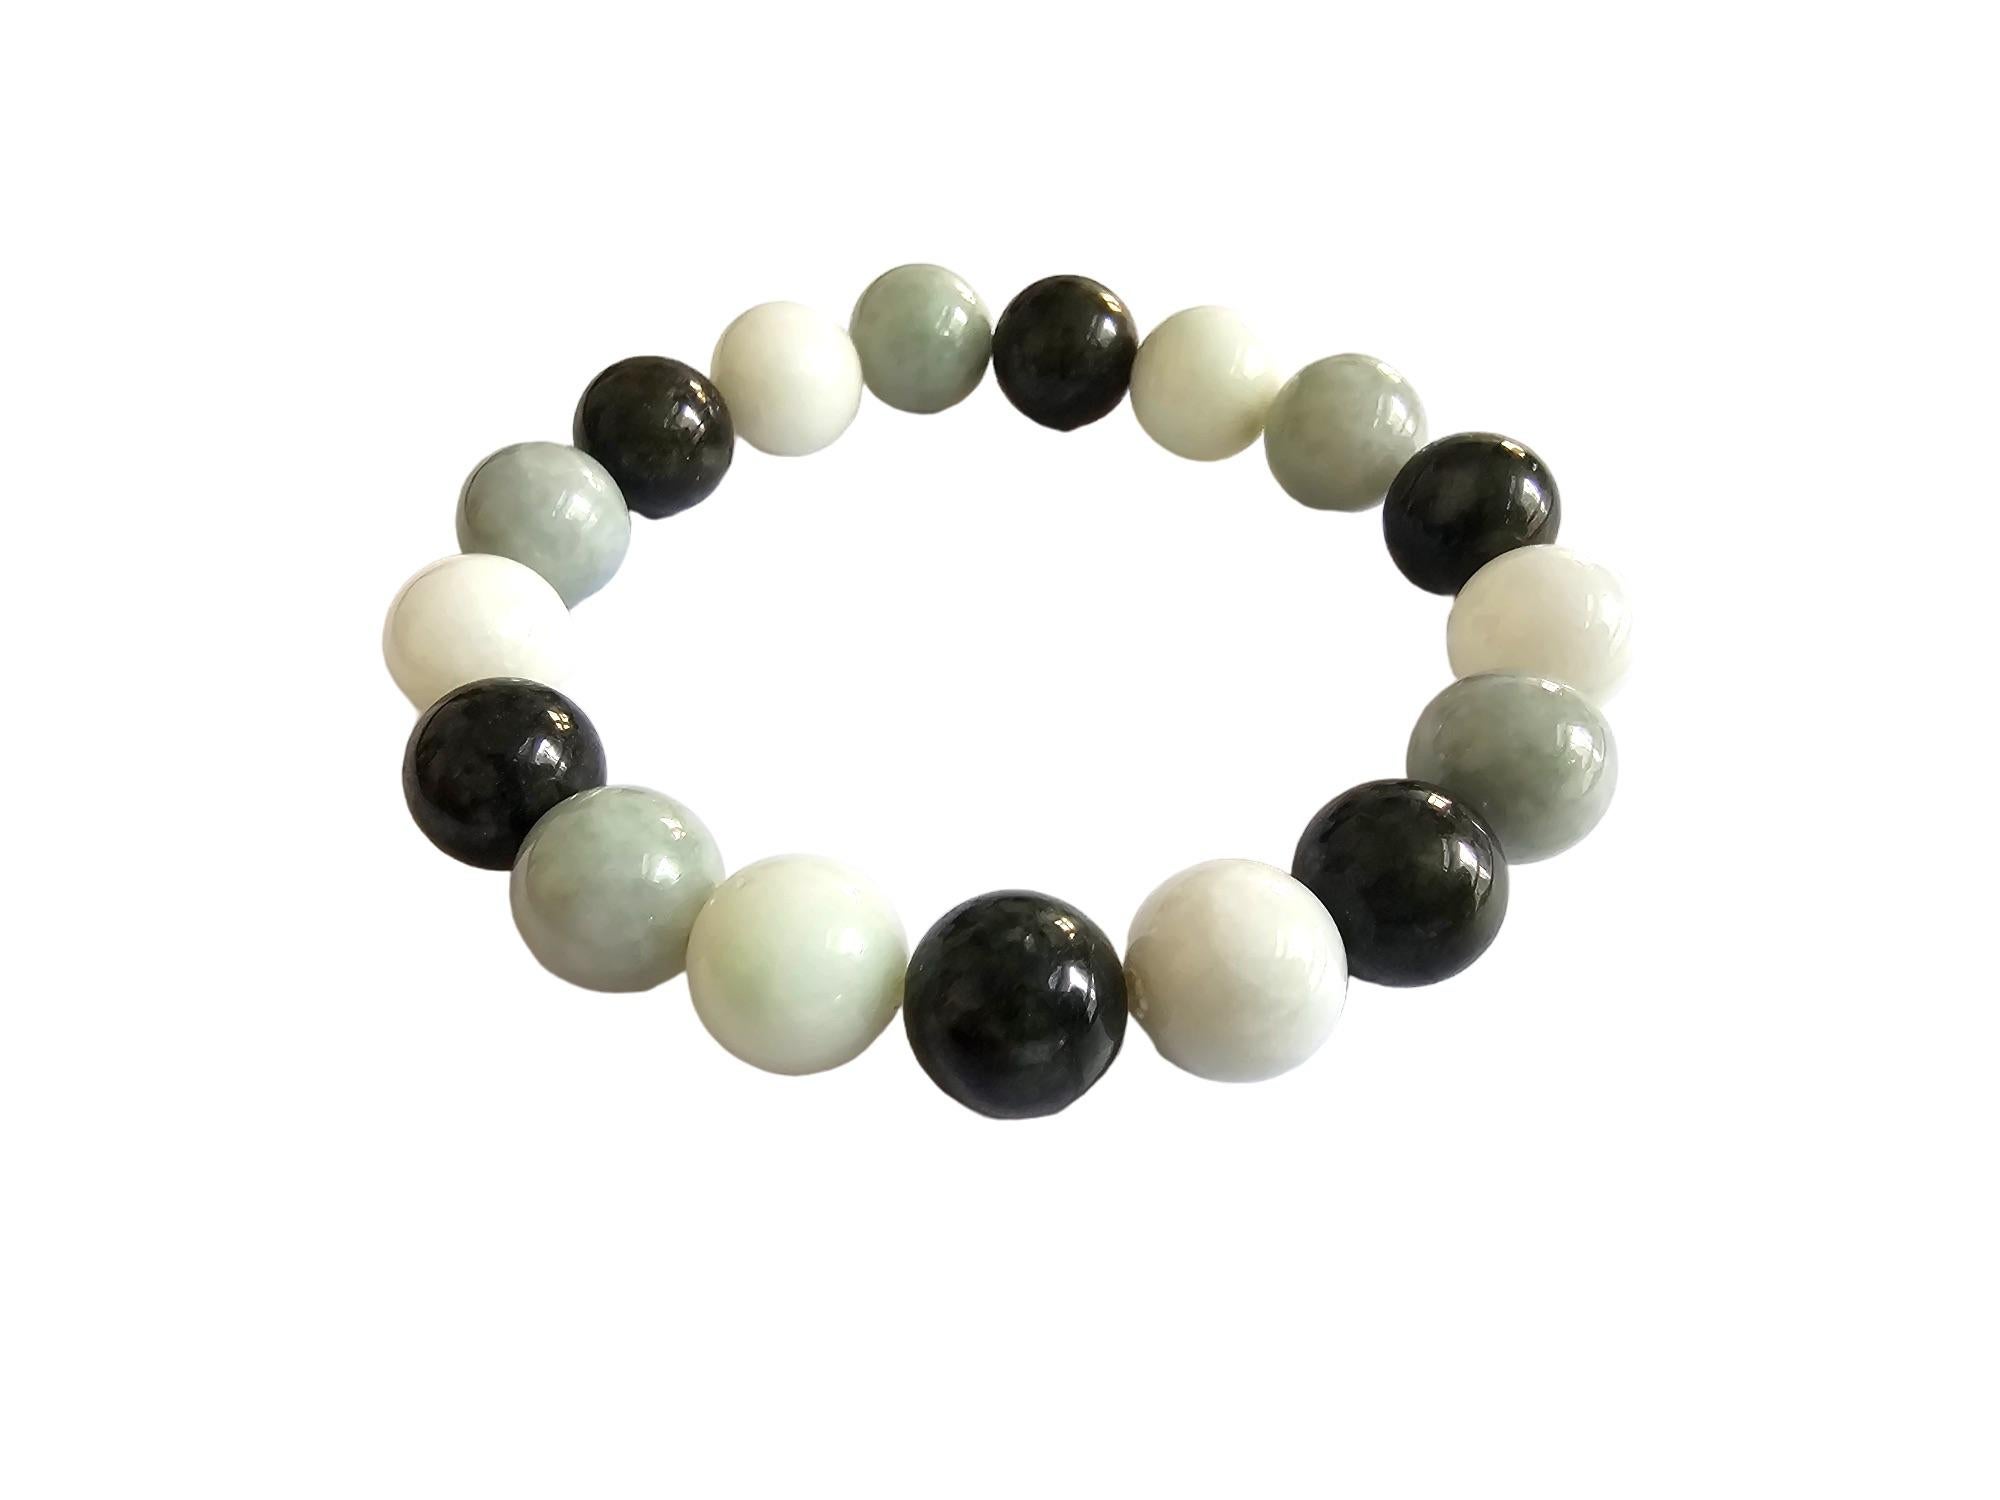 Bracelet de perles de jadéite A-Jade de Birmanie (12-12.5mm chaque x 17 perles) 

12-12.5mm chacune, 17 perles de jadéite parfaitement calibrées. Nous avons utilisé trois teintes uniques de vert provenant de la même pierre brute de jadéite pour